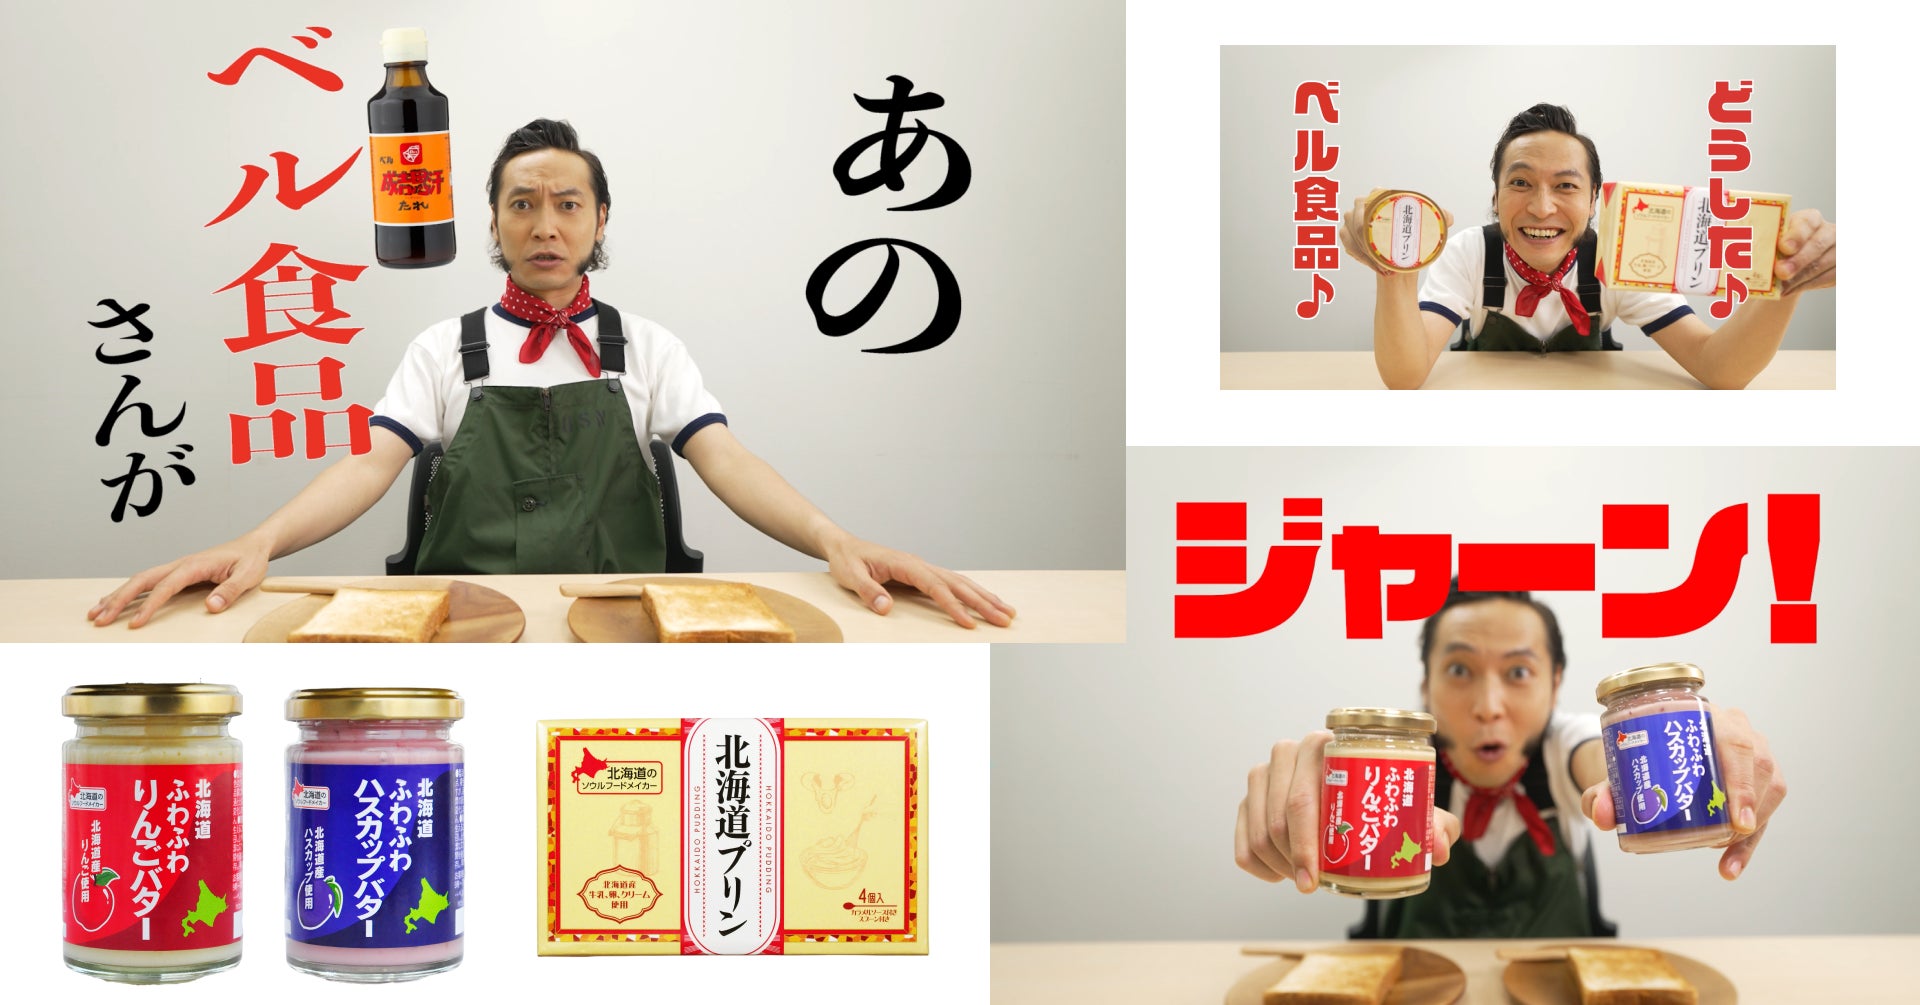 北海道の人気タレント、上杉周大さんがYouTuberに!?ベル食品の新商品「北海道ふわふわりんごバター&北海道ふわふわハスカップバター」の新CMをYoutubeで公開